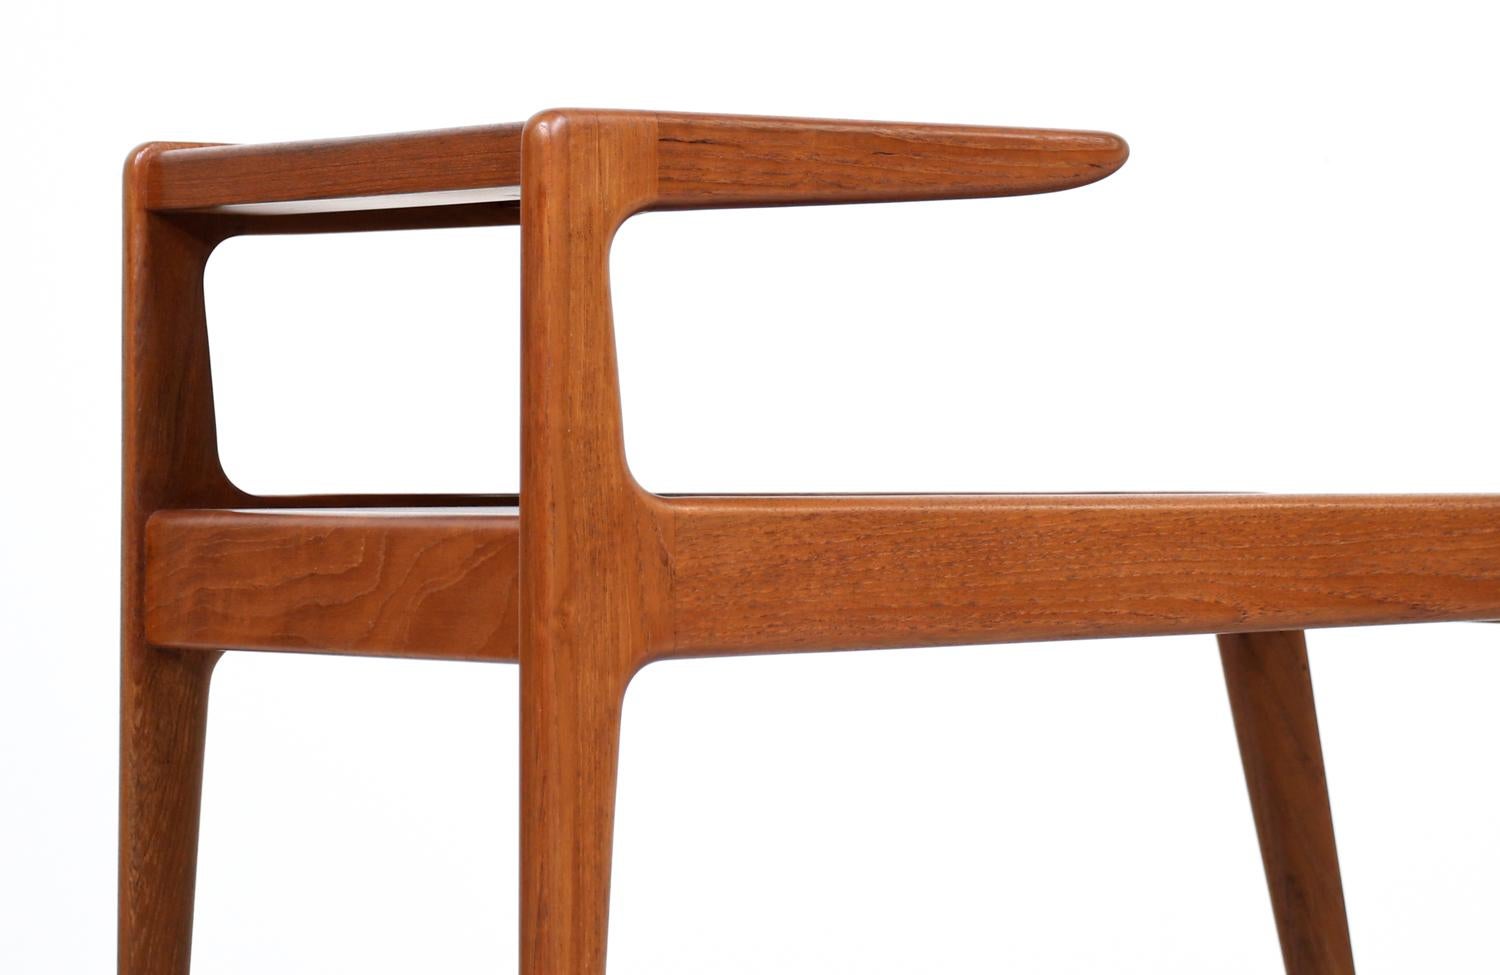 Danish Modern Sculpted Teak Side Tables by Kurt Østervig for Jason Møbler 1